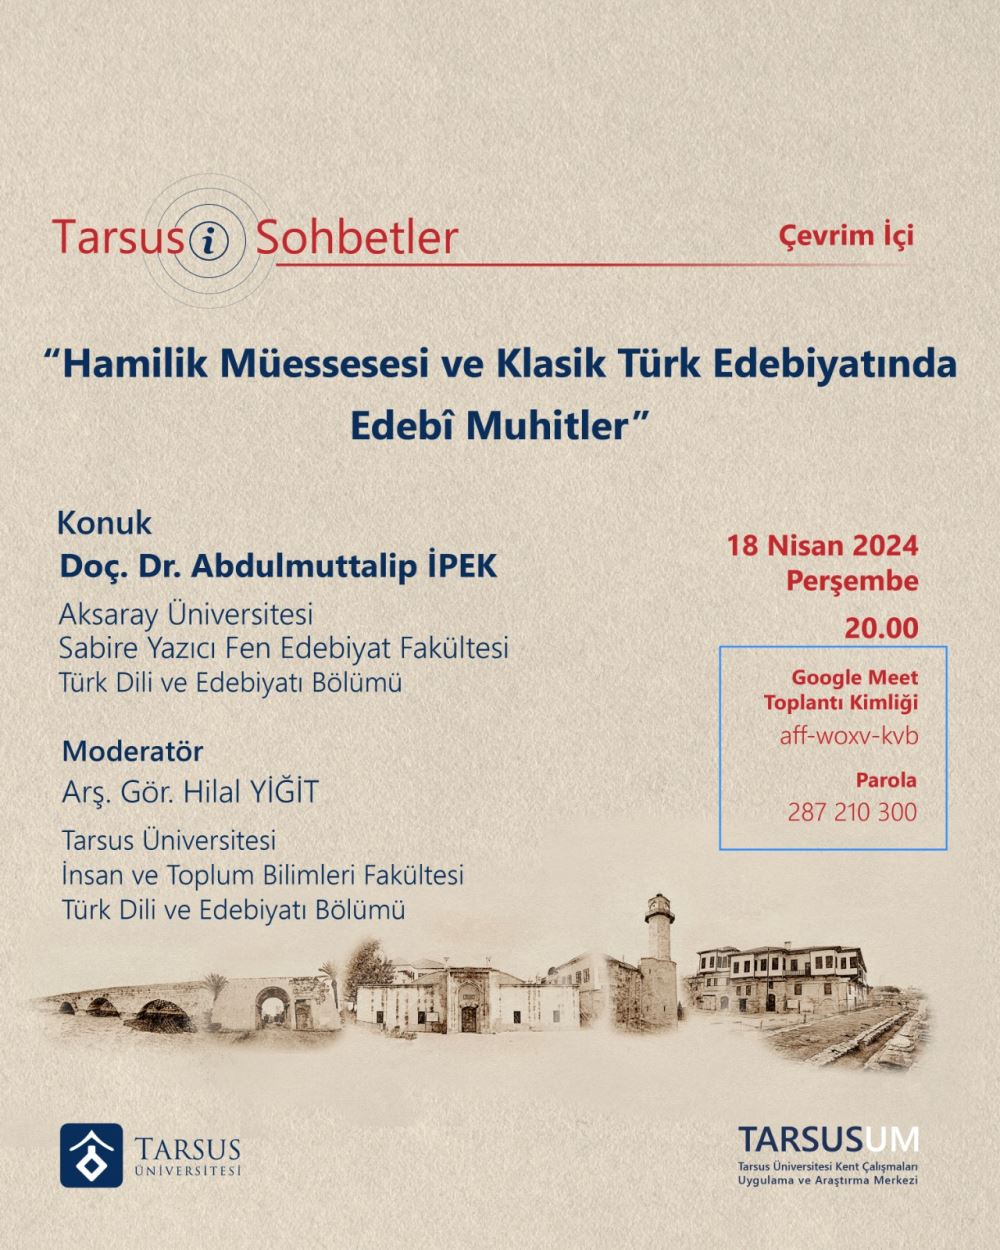 Tarsusi Sohbetler “Hamilik Müessesesi ve Klasik Türk Edebiyatında Edebî Muhitler